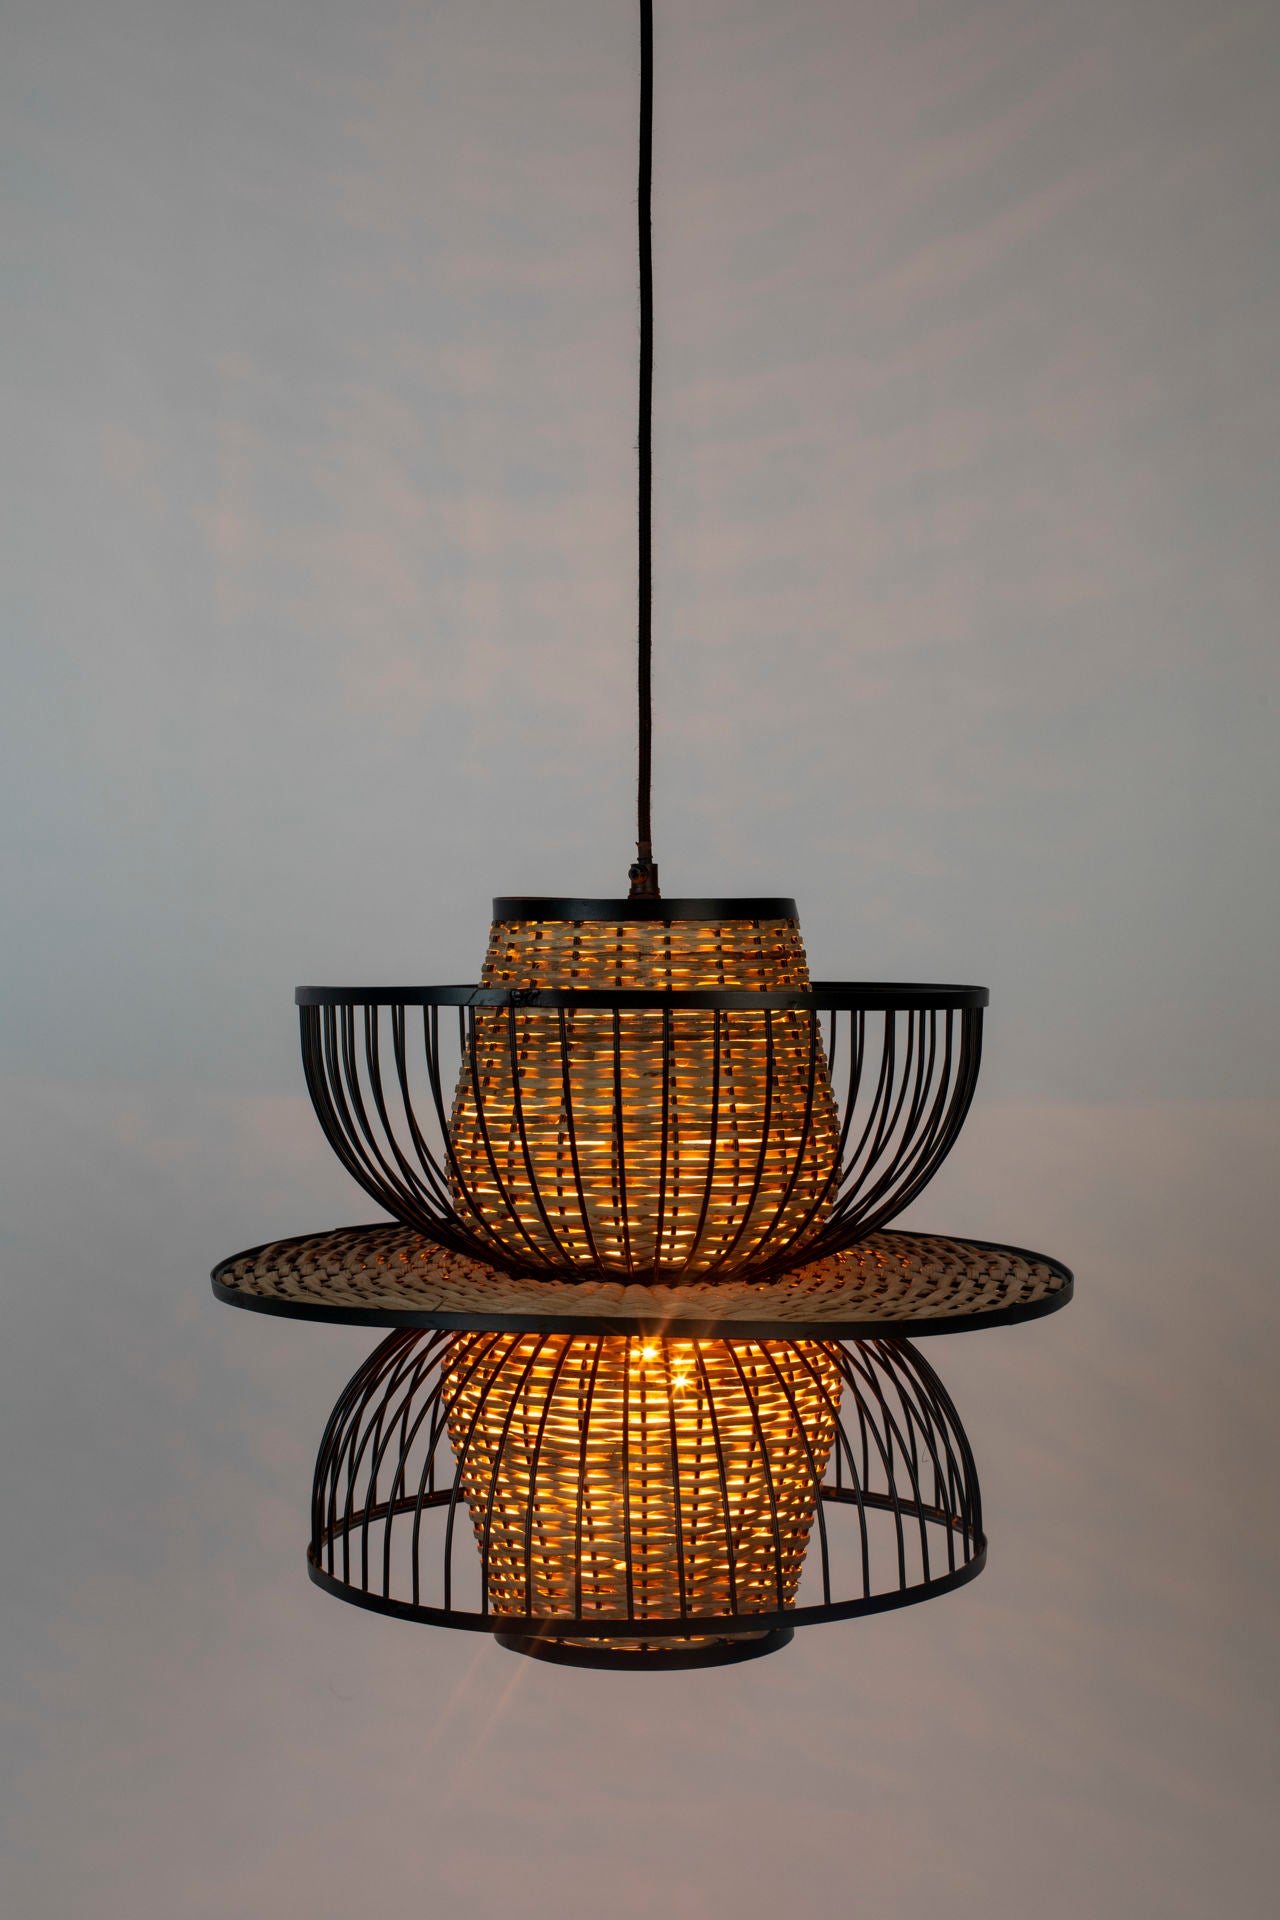 Lampe suspendue Nancy's Viera West - Moderne - Noir, Naturel, Marron - Acier, Osier, PVC - 40 cm x 40 cm x 145 cm